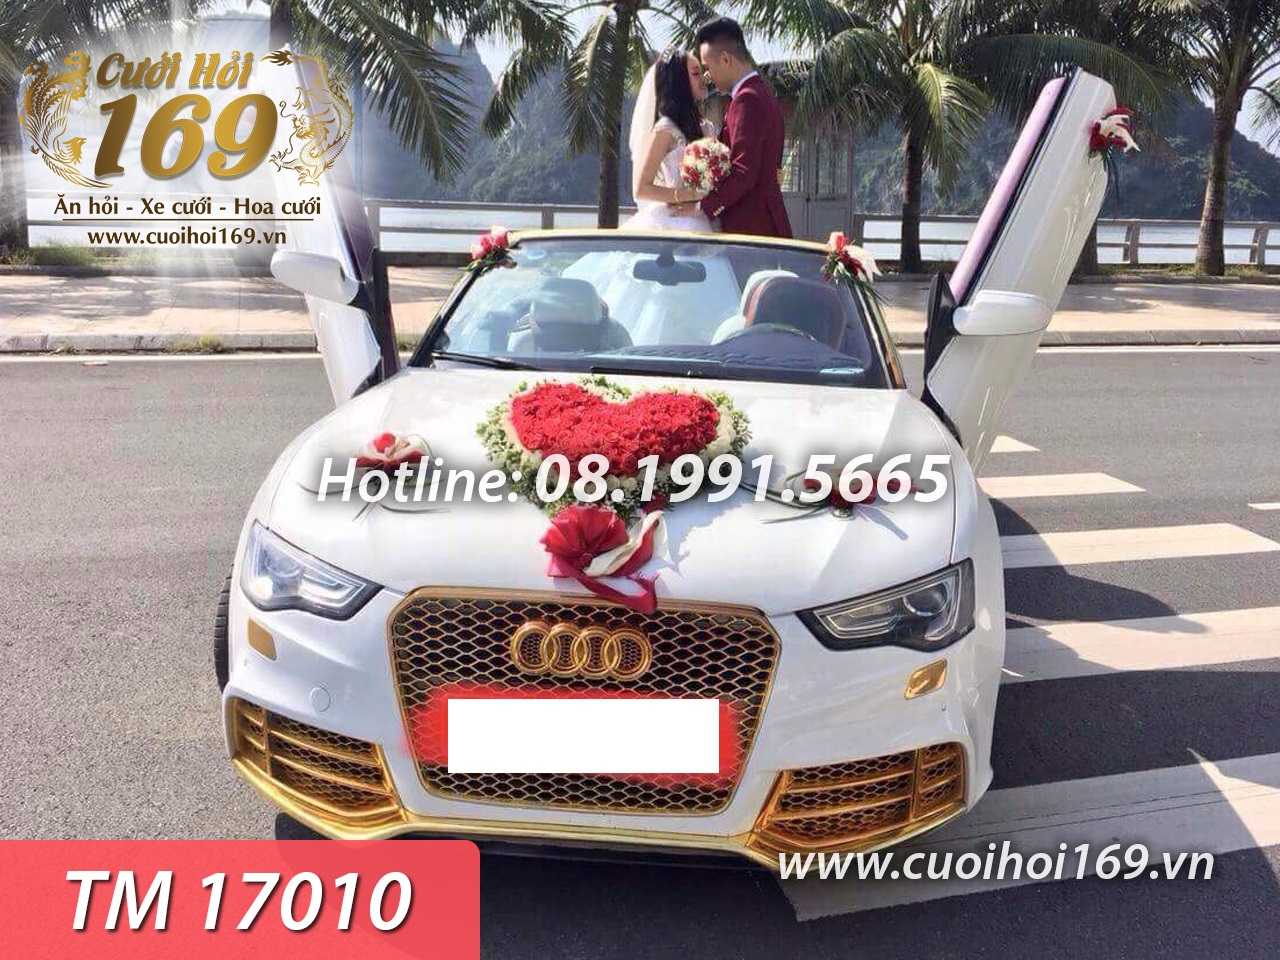 Cho thuê xe cưới mui trần Audi A4 giá rẻ tại TPHCM  Dịch vụ cho thuê xe du  lịch chuyên nghiệp tại TPHCM